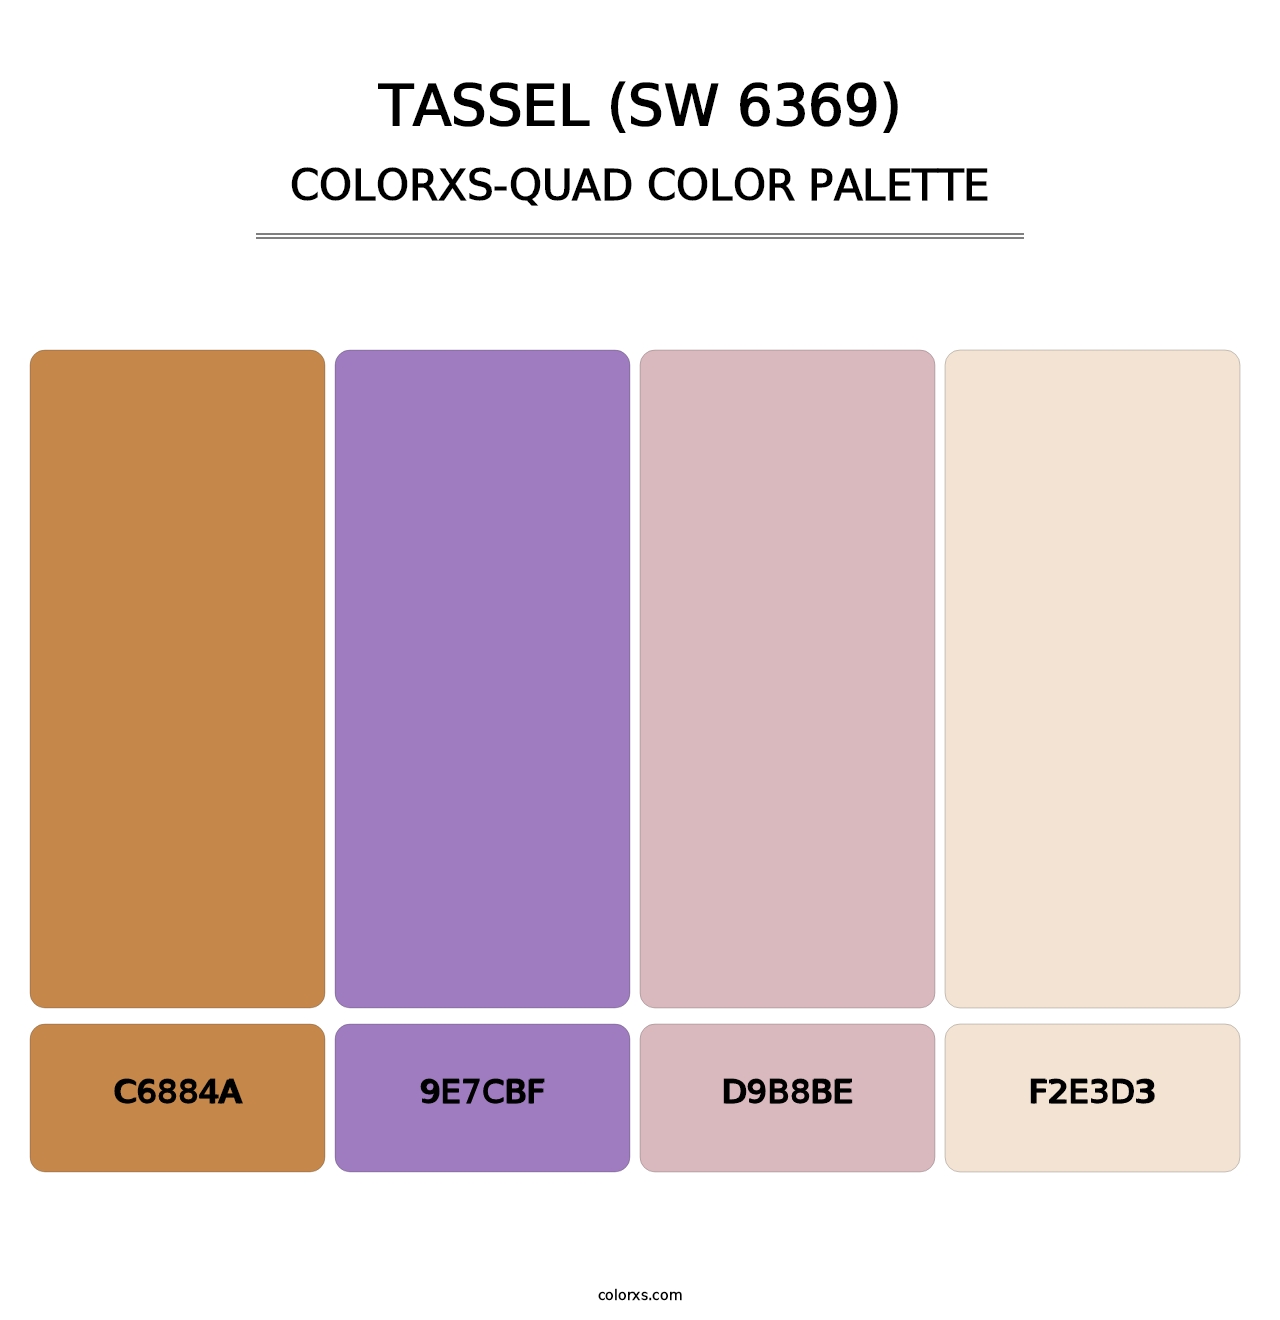 Tassel (SW 6369) - Colorxs Quad Palette